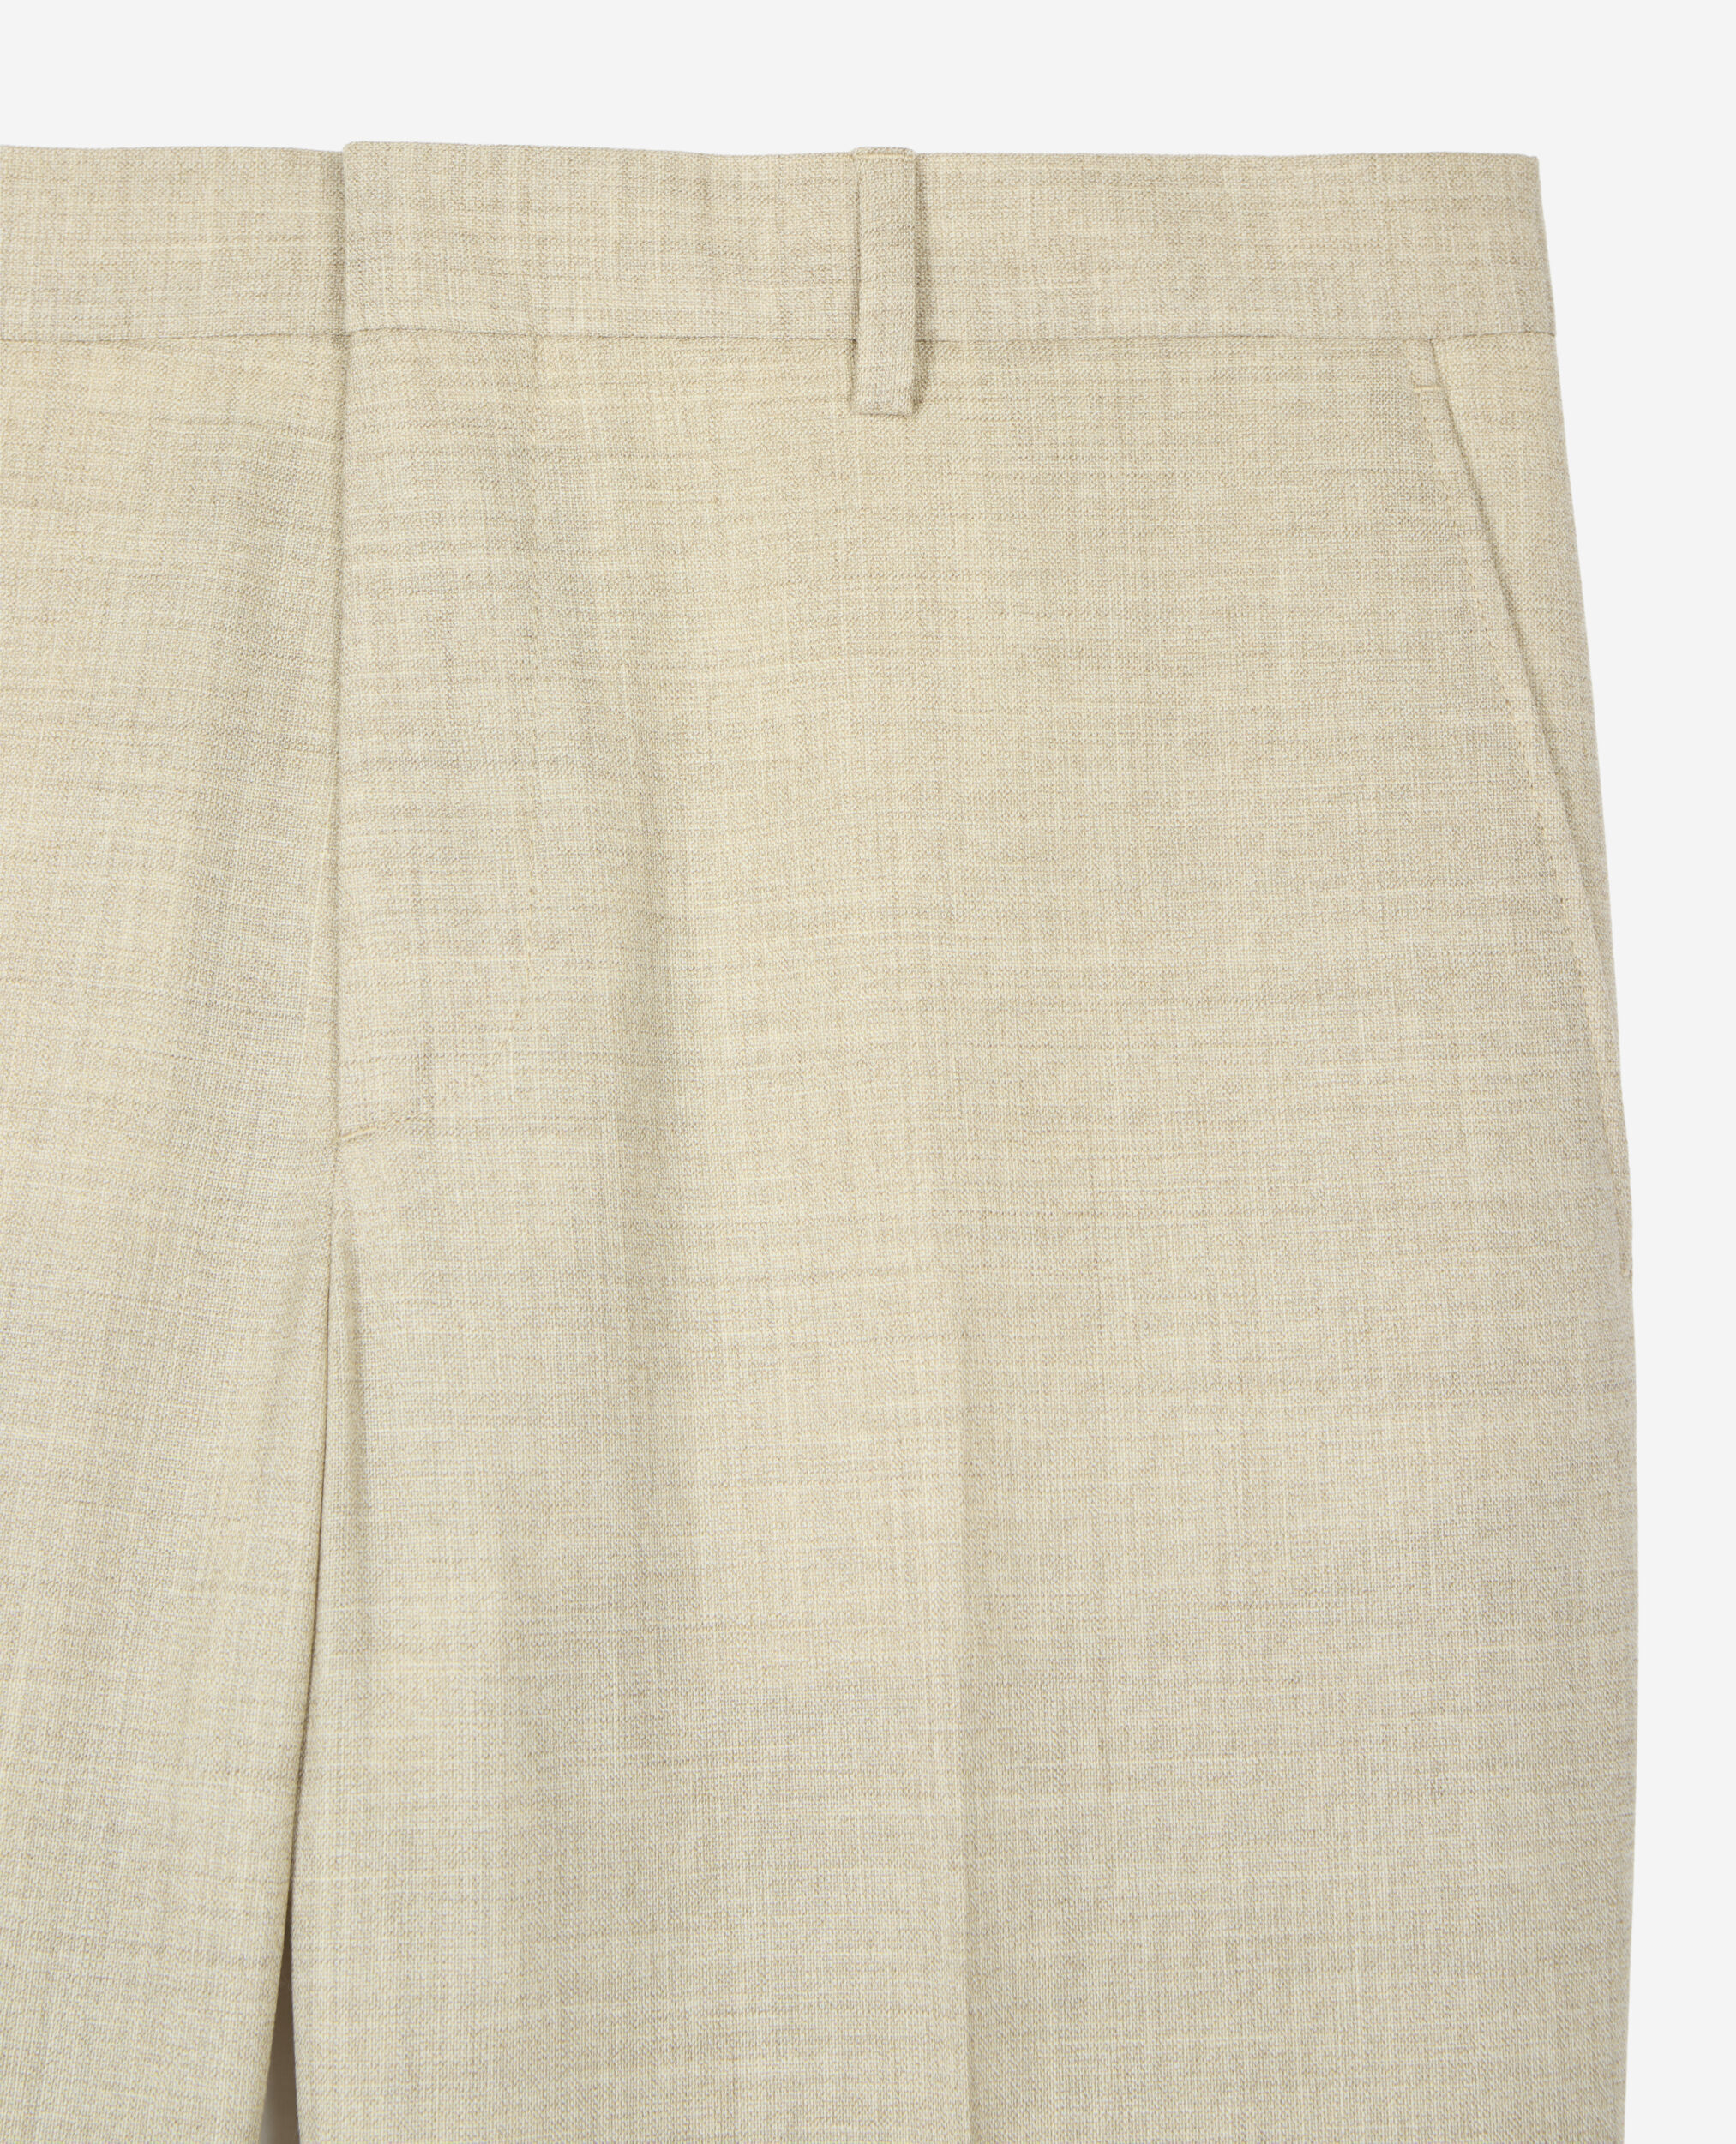 Pantalón traje beige lana, BEIGE, hi-res image number null